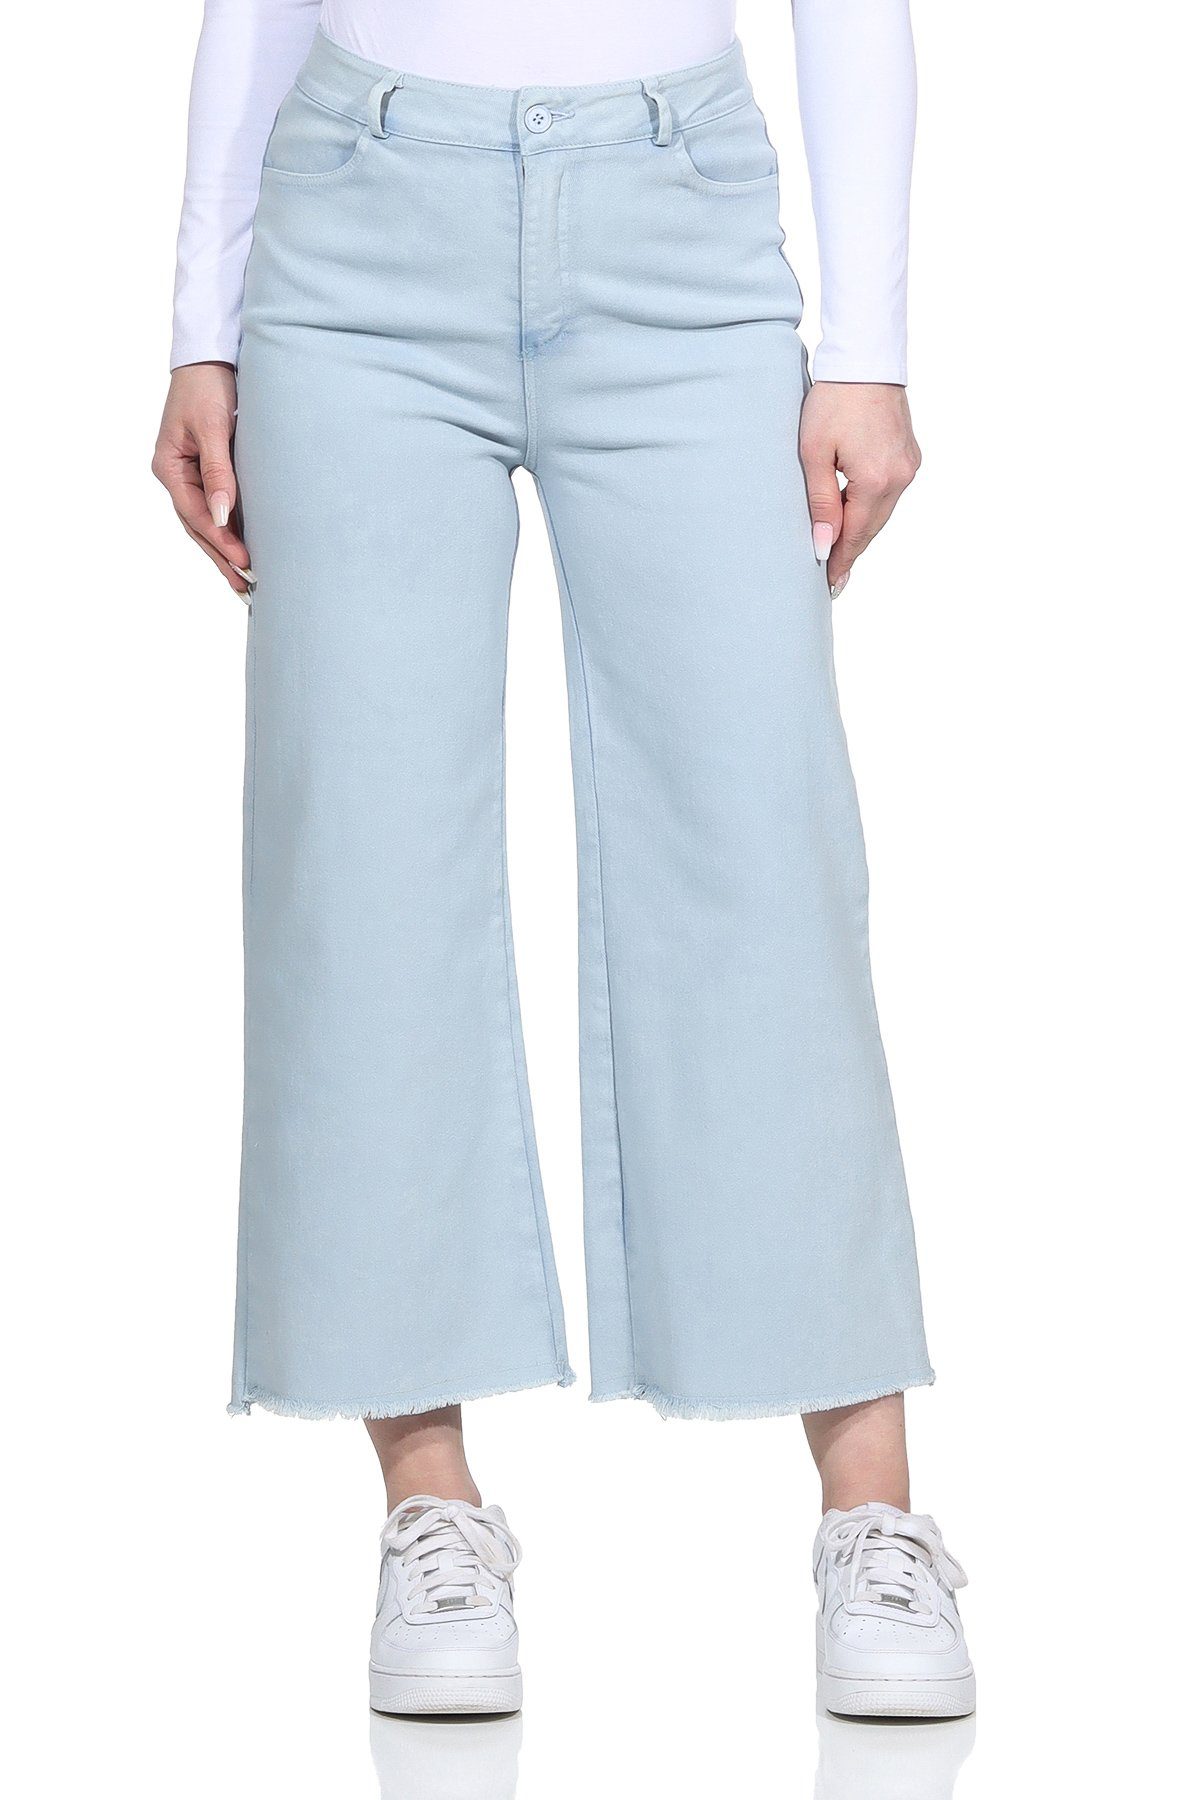 Damenmode Damen Wide Jeans Gürtelschlaufen, Culotte knöchelfrei, für Weite Aurela Hellblau Baumwolle Jeans 100% mit Leg